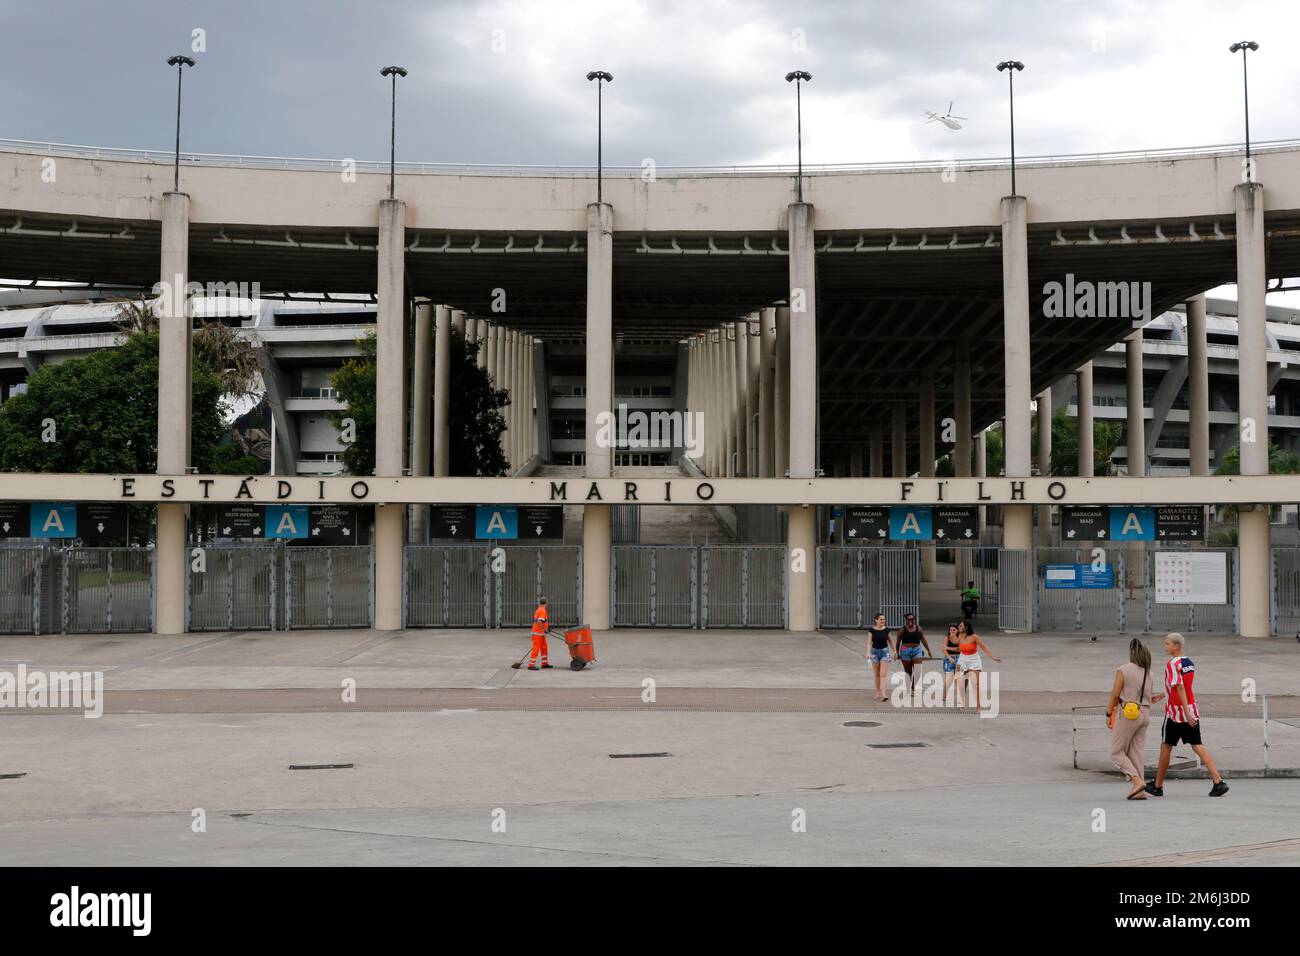 Avenue King Pelé au stade Macaranã, panneau de rue. Hommage au célèbre joueur brésilien de football Pele, Edson Arantes do Nascimento - Rio de Janeiro Brésil Banque D'Images